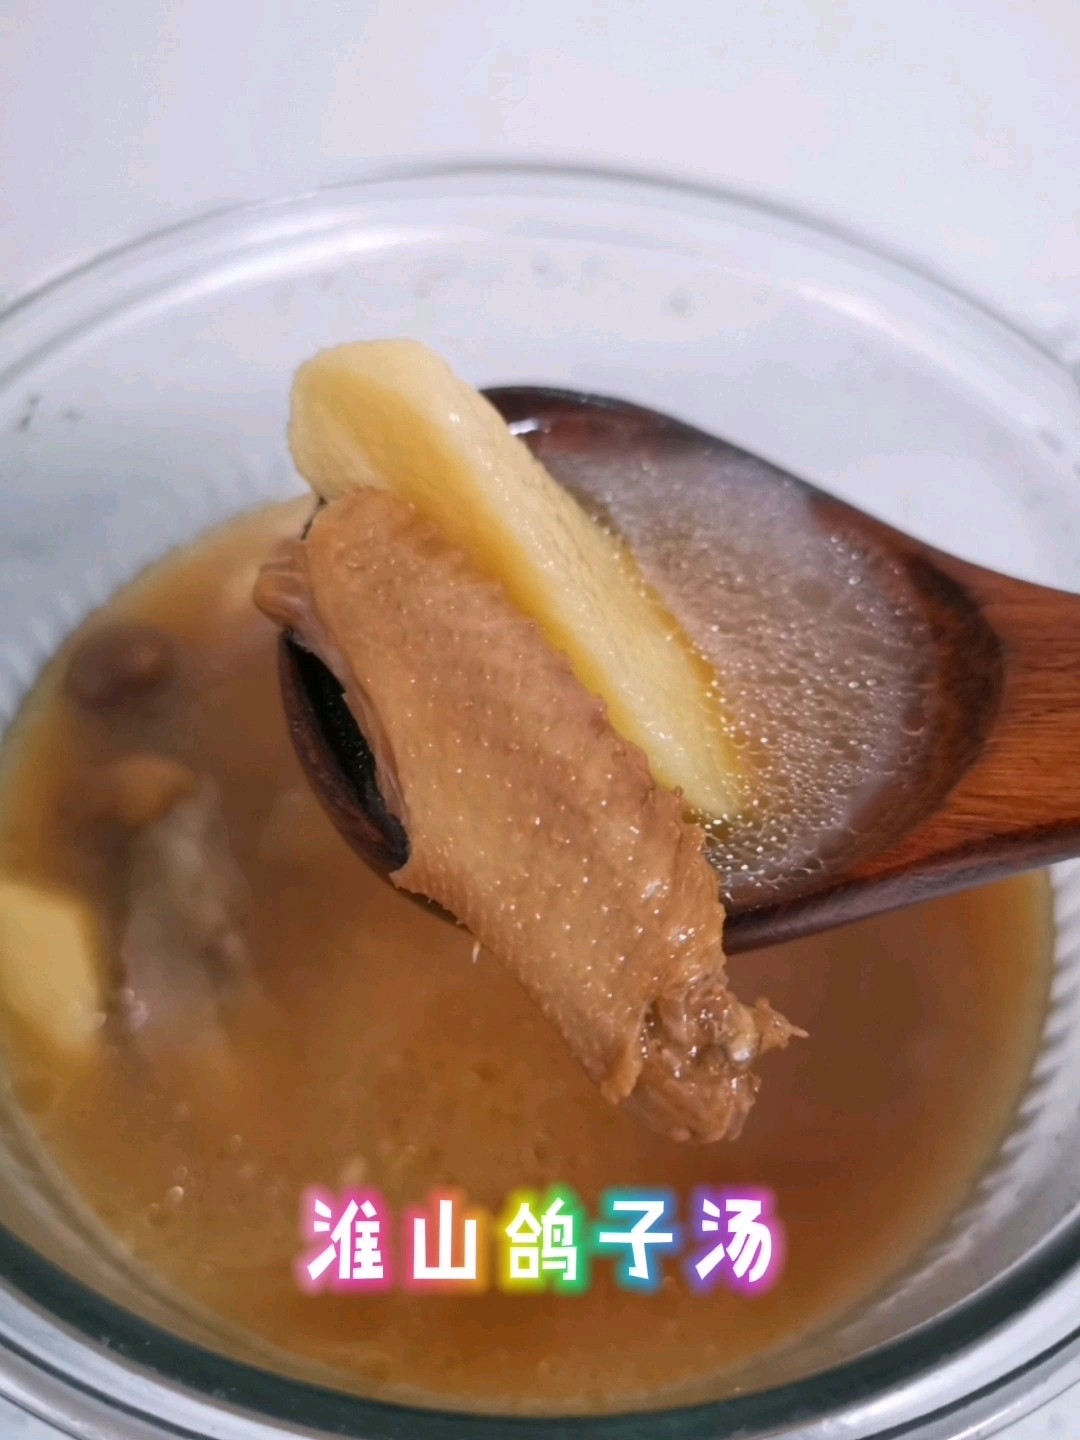 Yam Pigeon Soup recipe